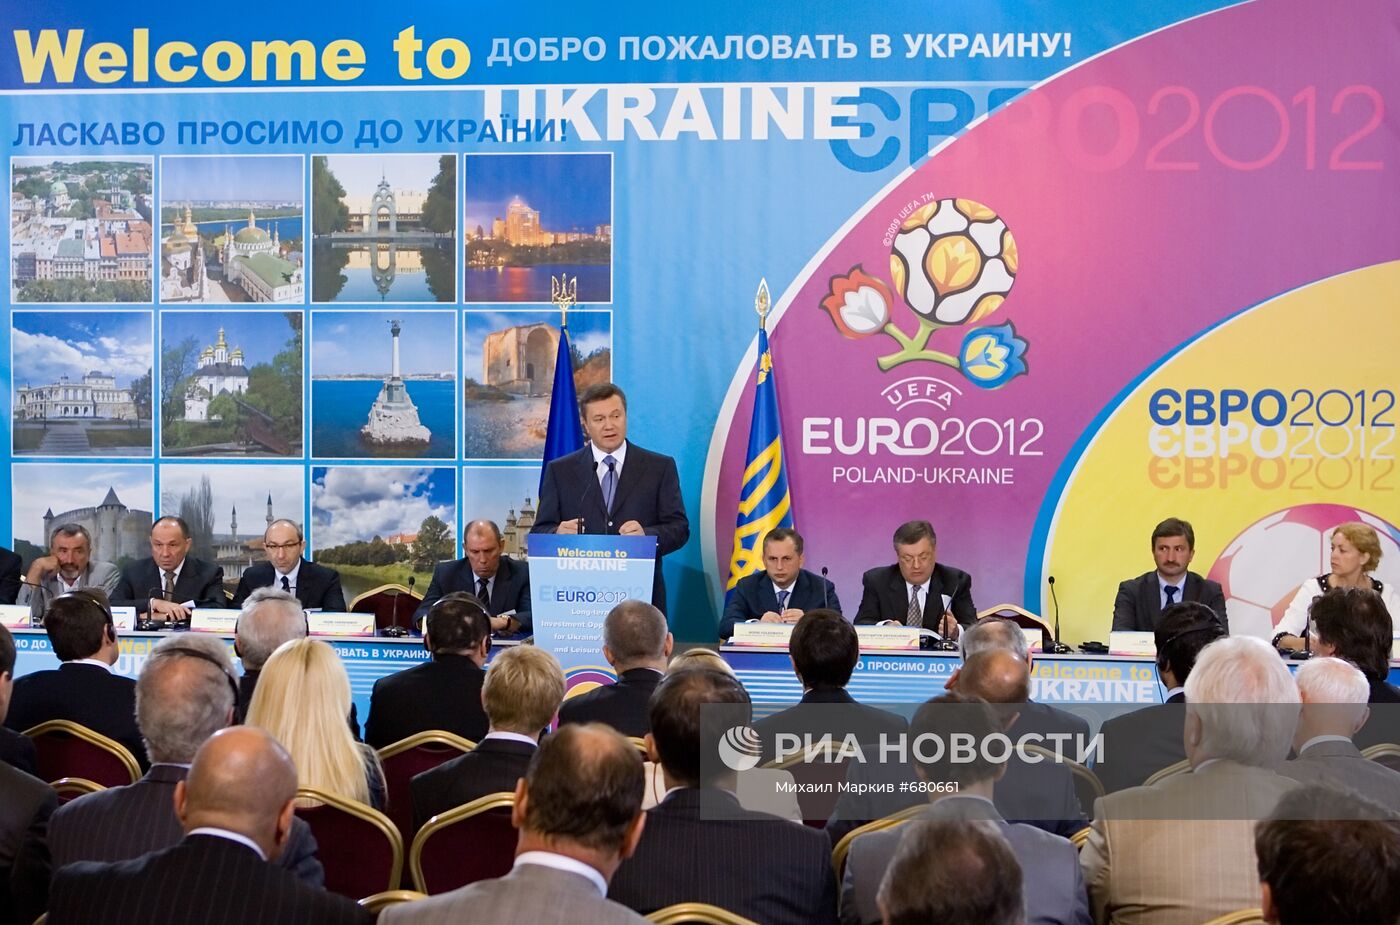 В.Янукович принял участие в международной конференции